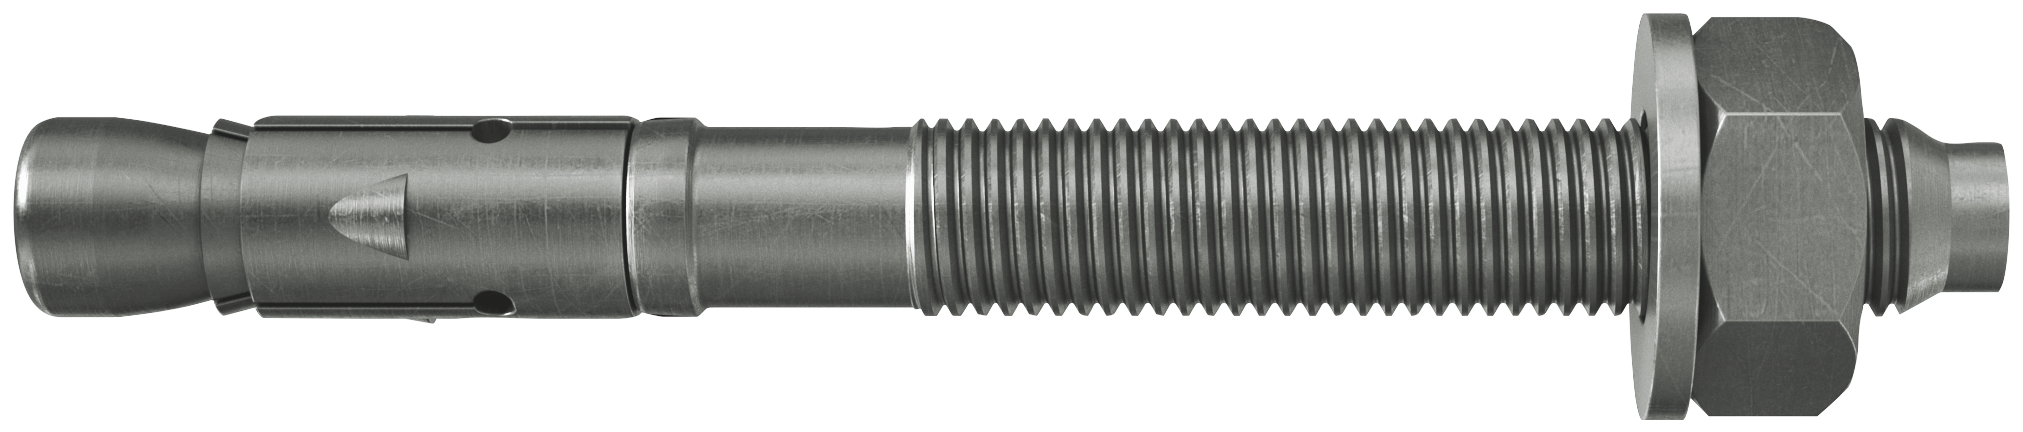 fischer Tassello acciaio FAZ II 12-10 A4 (20 Pz.) L'ancorante ad espansione ad alte prestazioni per carichi statici su calcestruzzo fessurato e per applicazioni sismiche. Versione in acciaio inossidabile con classe di resistenza alla corrosione CRC III. fie1491